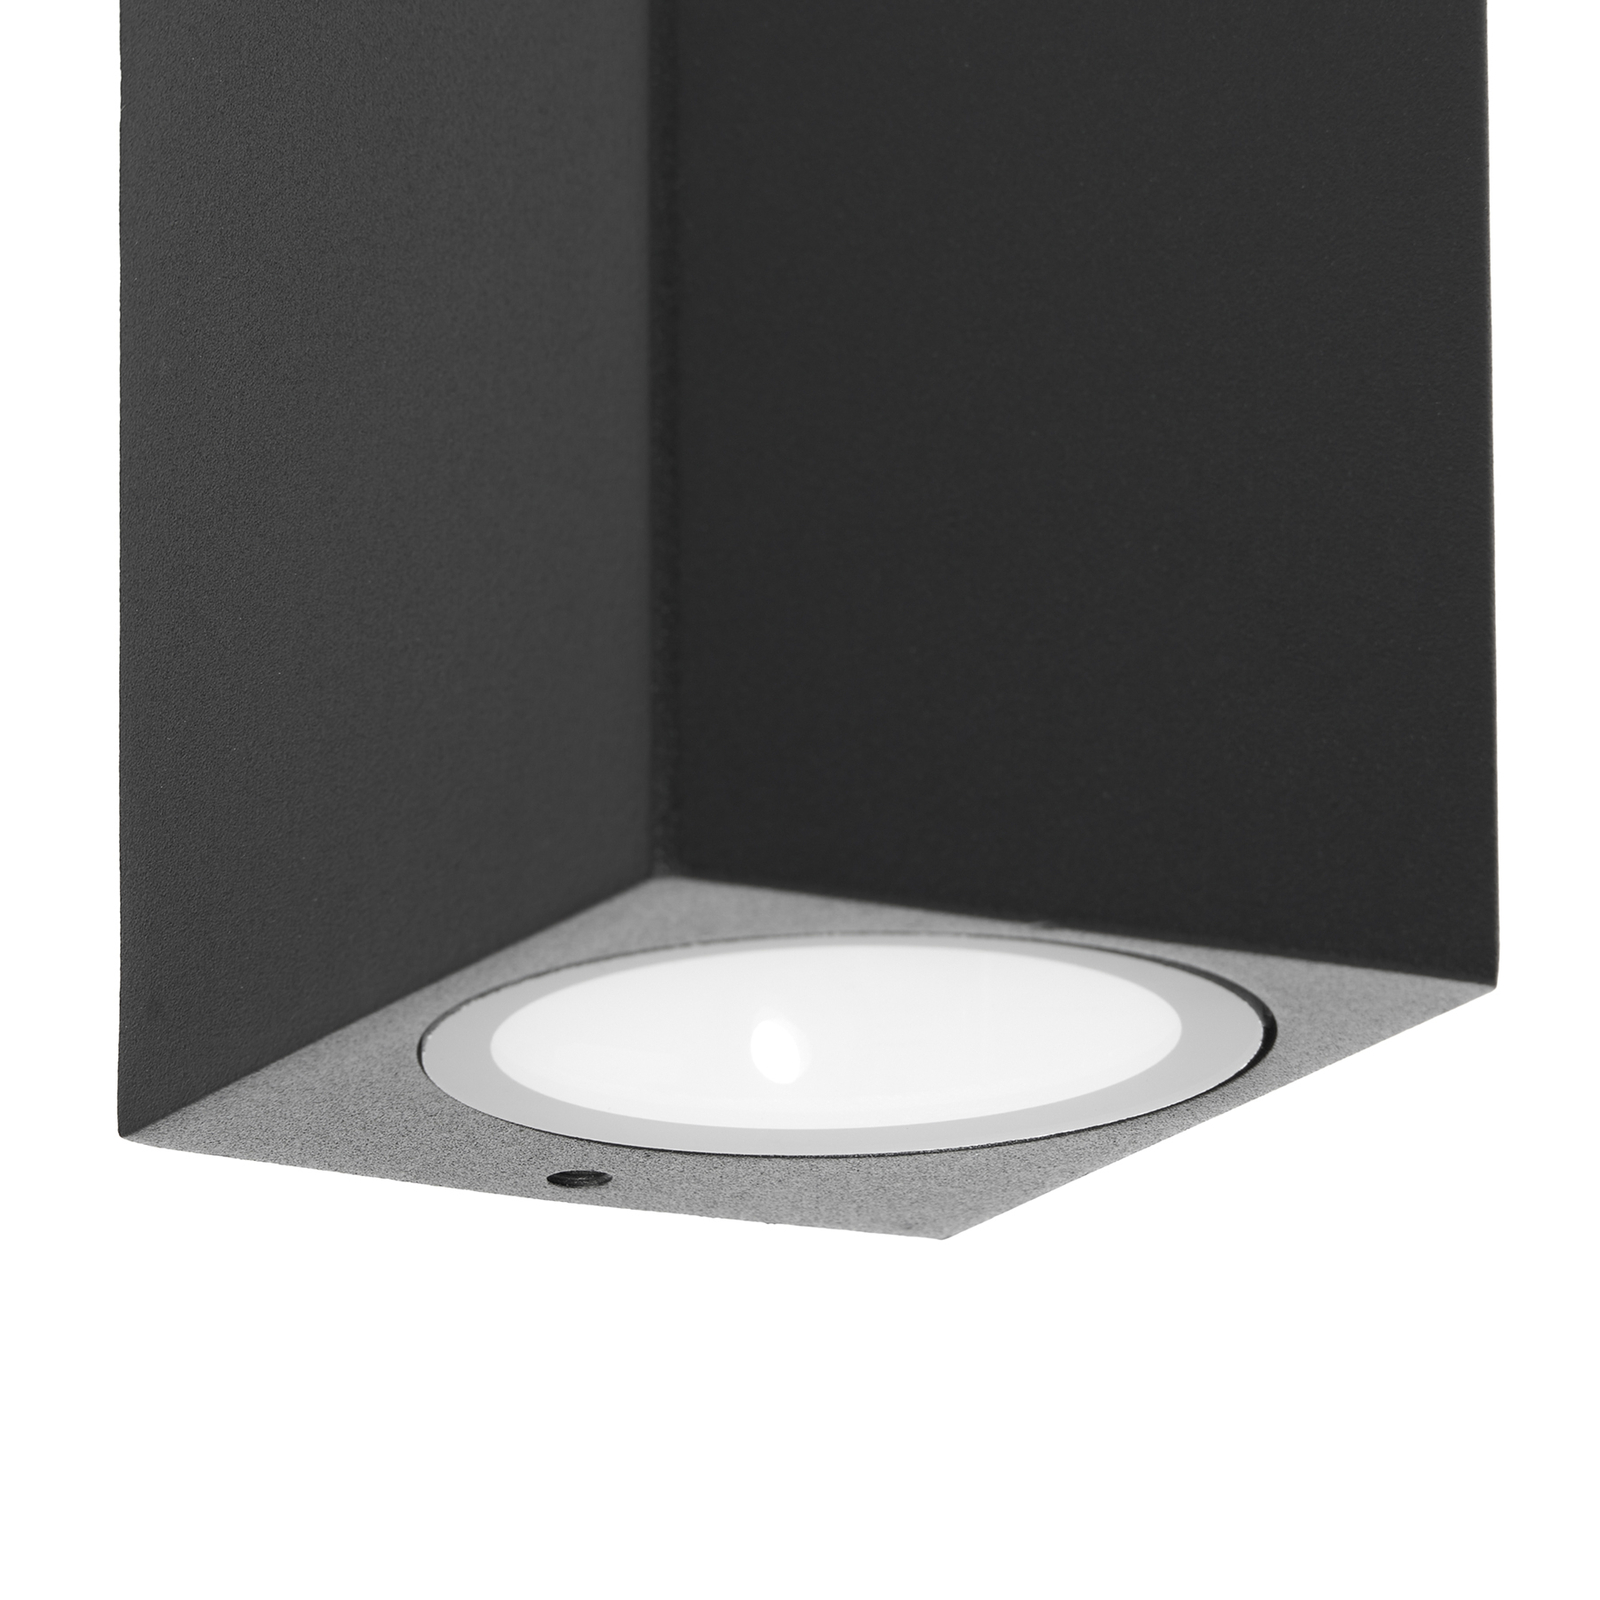 "Prios" lauko sieninis šviestuvas "Tetje", juodas, kampinis, 16 cm